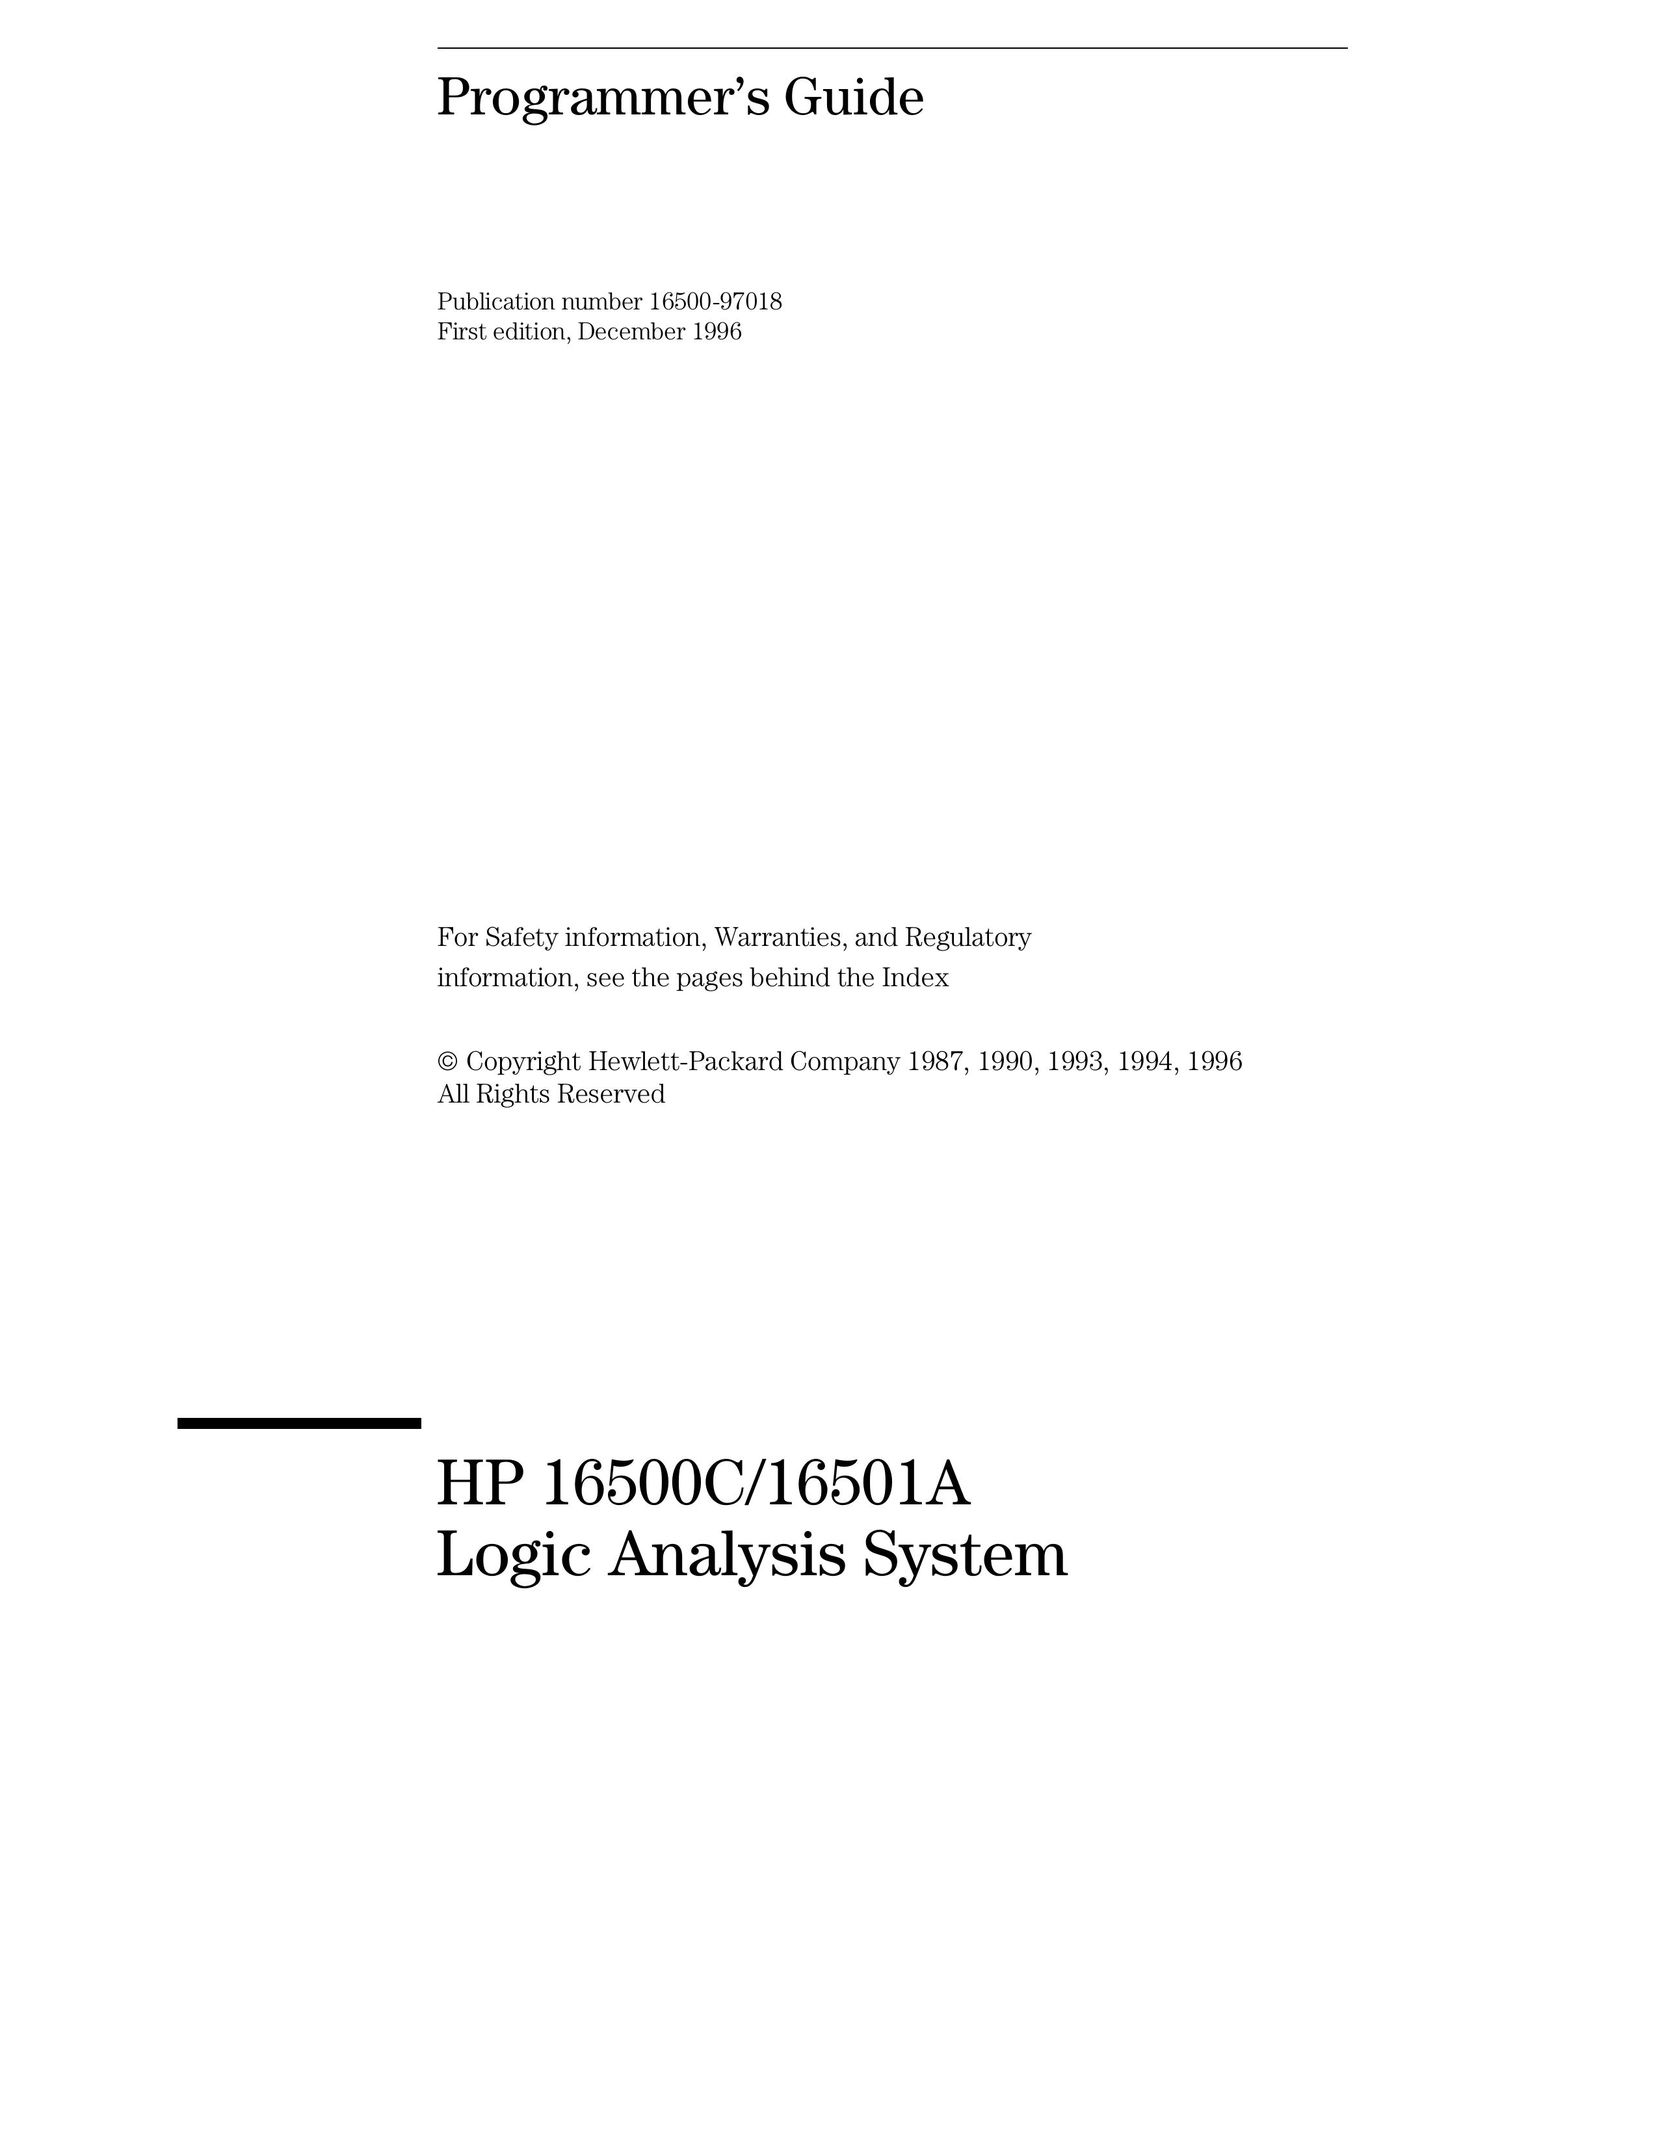 HP (Hewlett-Packard) 16501A Sander User Manual